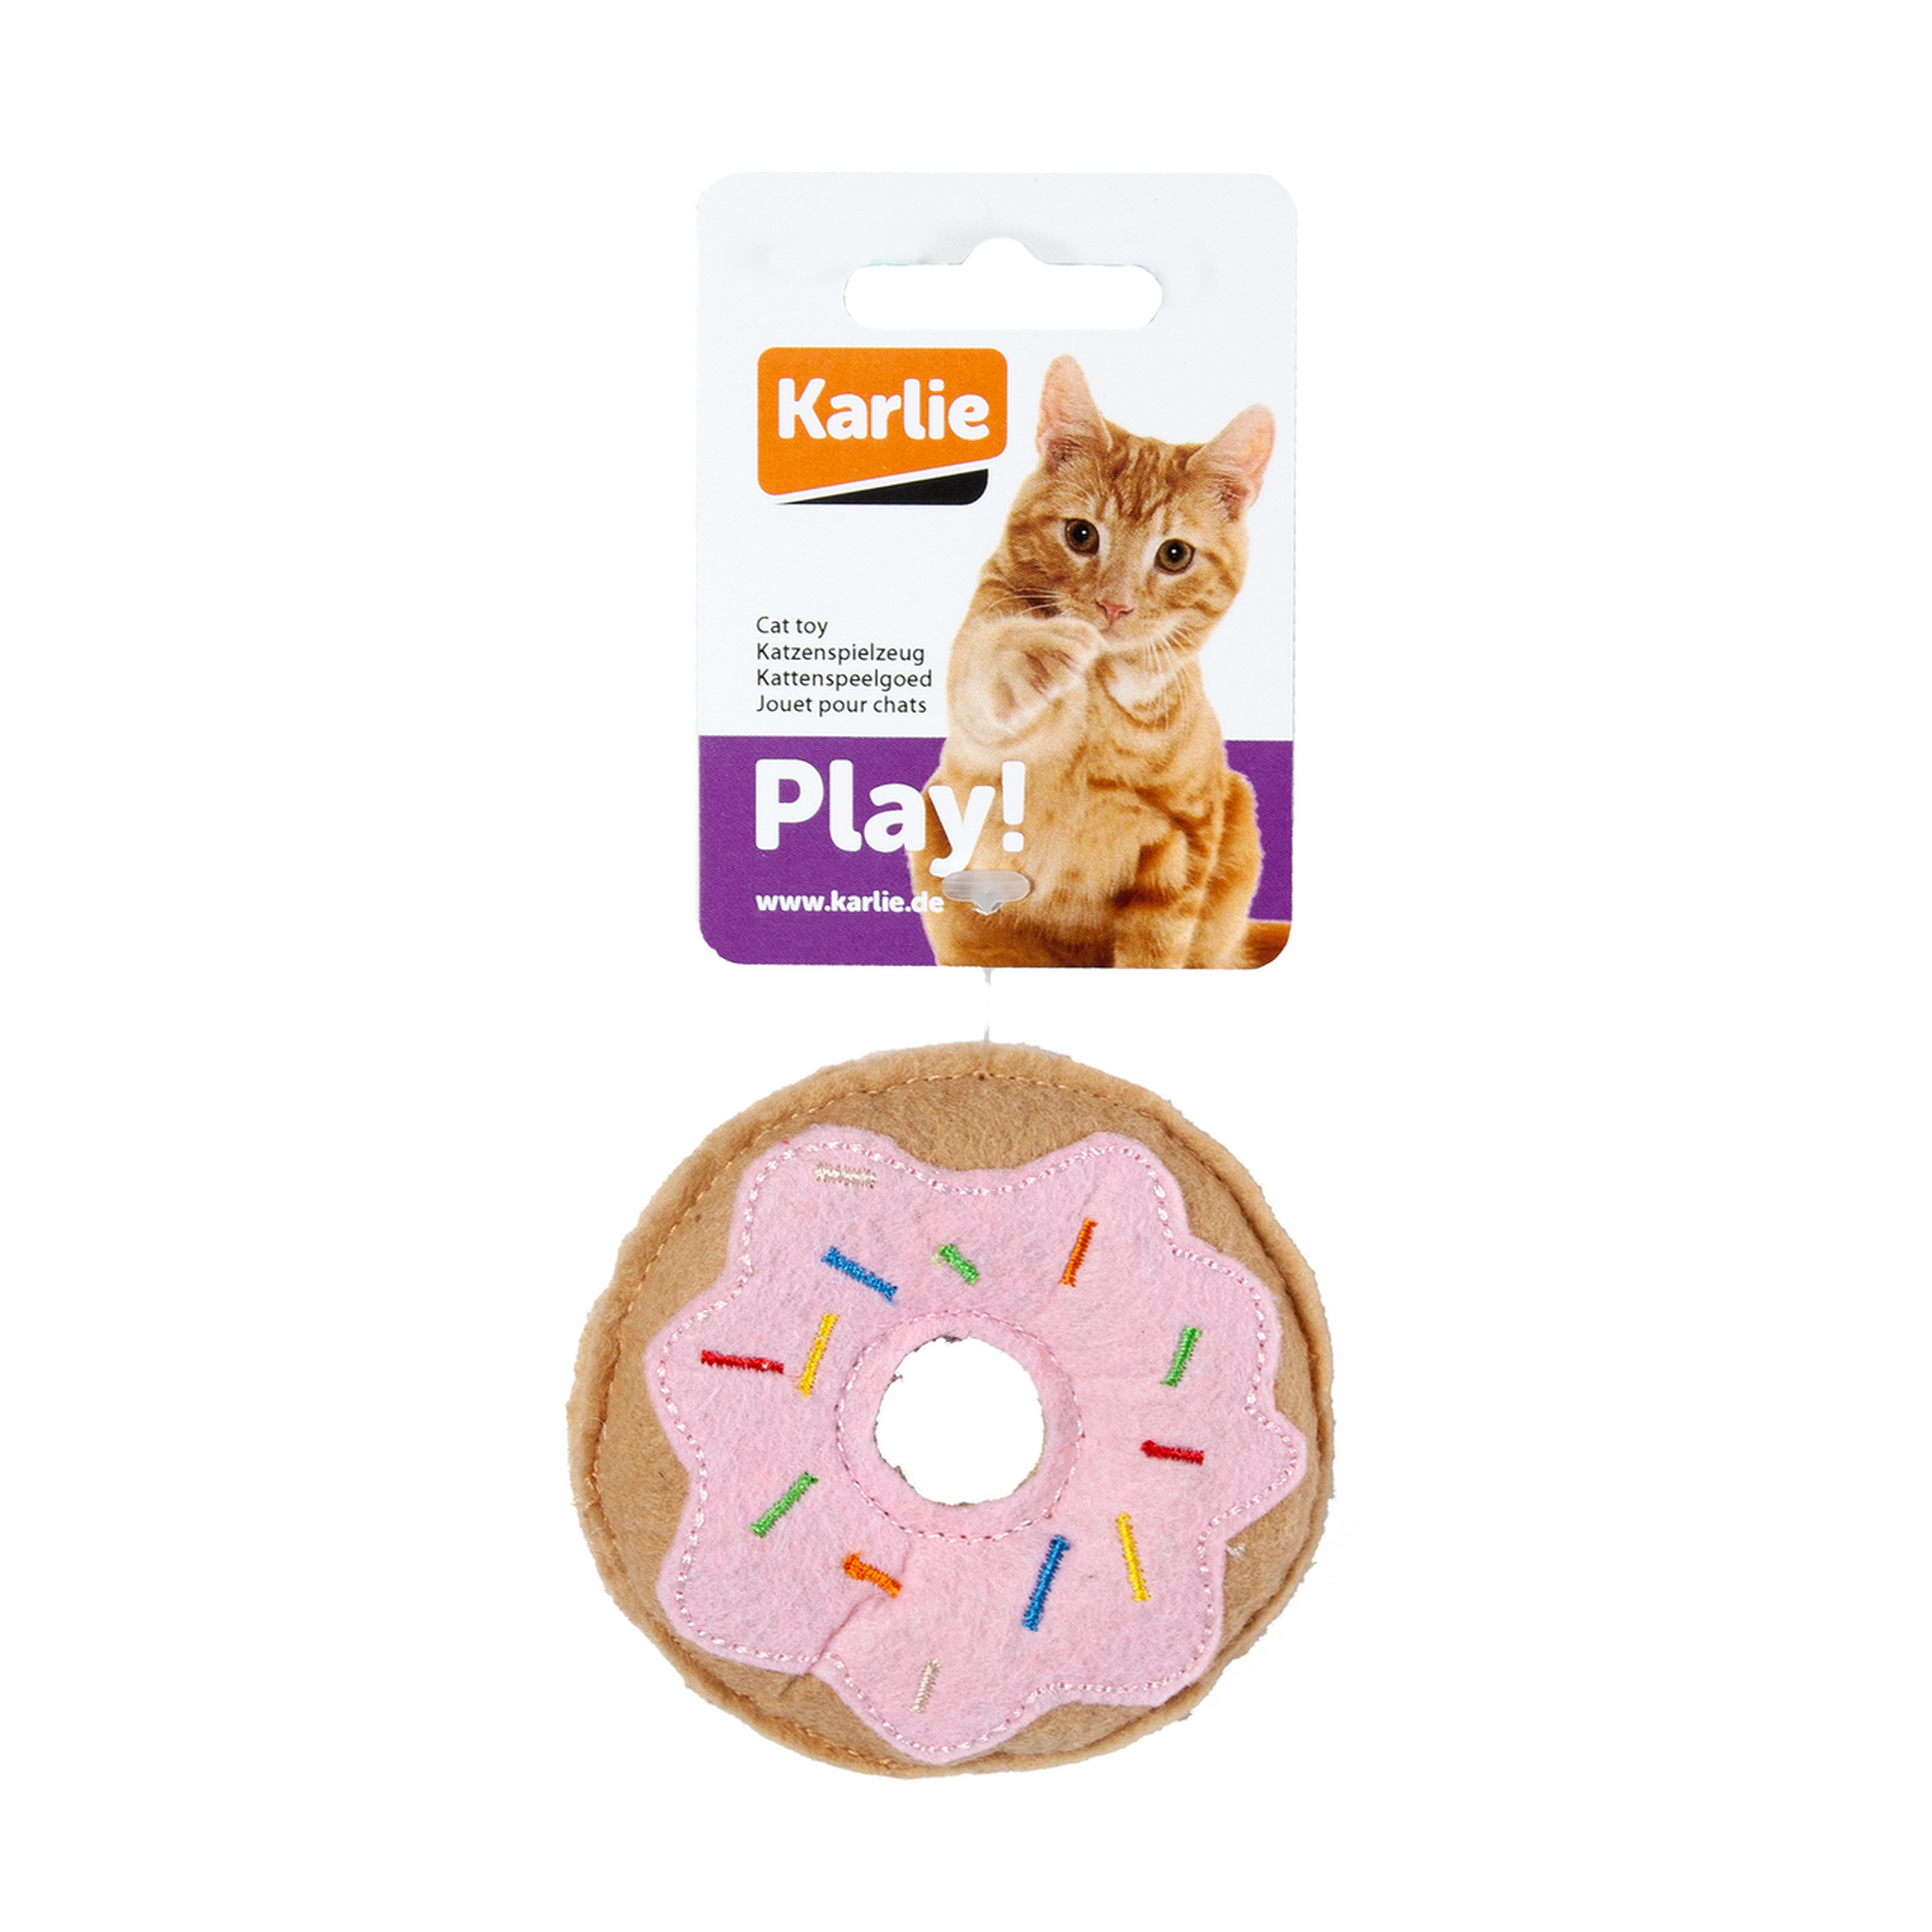 Katzenspielzeug Texil Donut pink mit Catnip 8 cm + product picture